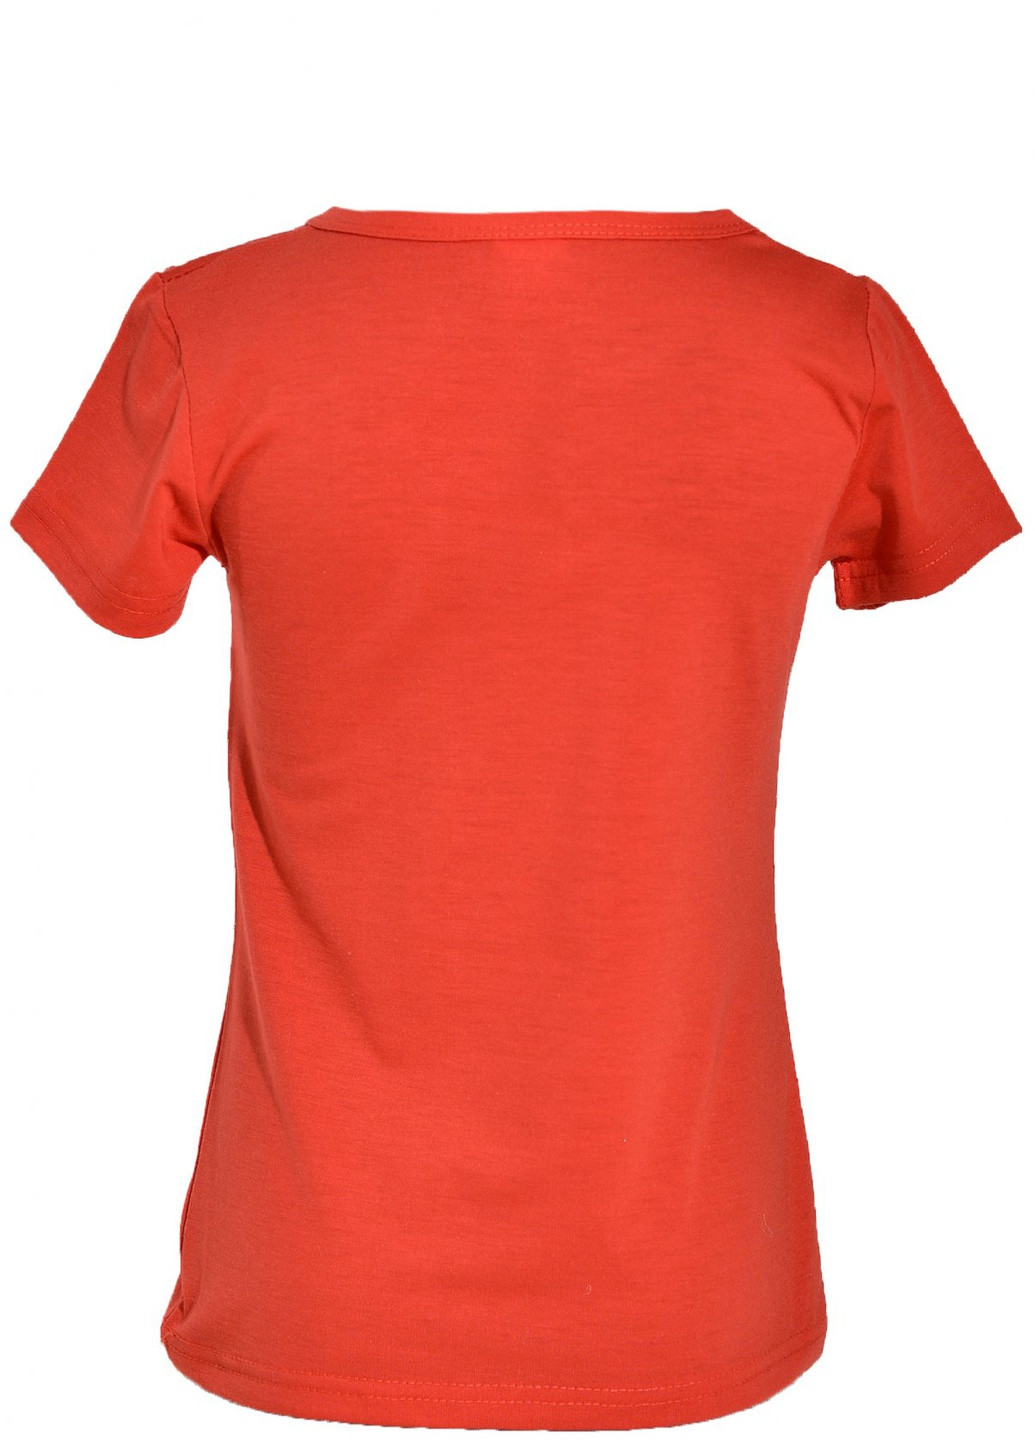 Красная футболки футболка на дівчаток (париж)16887-731 Lemanta